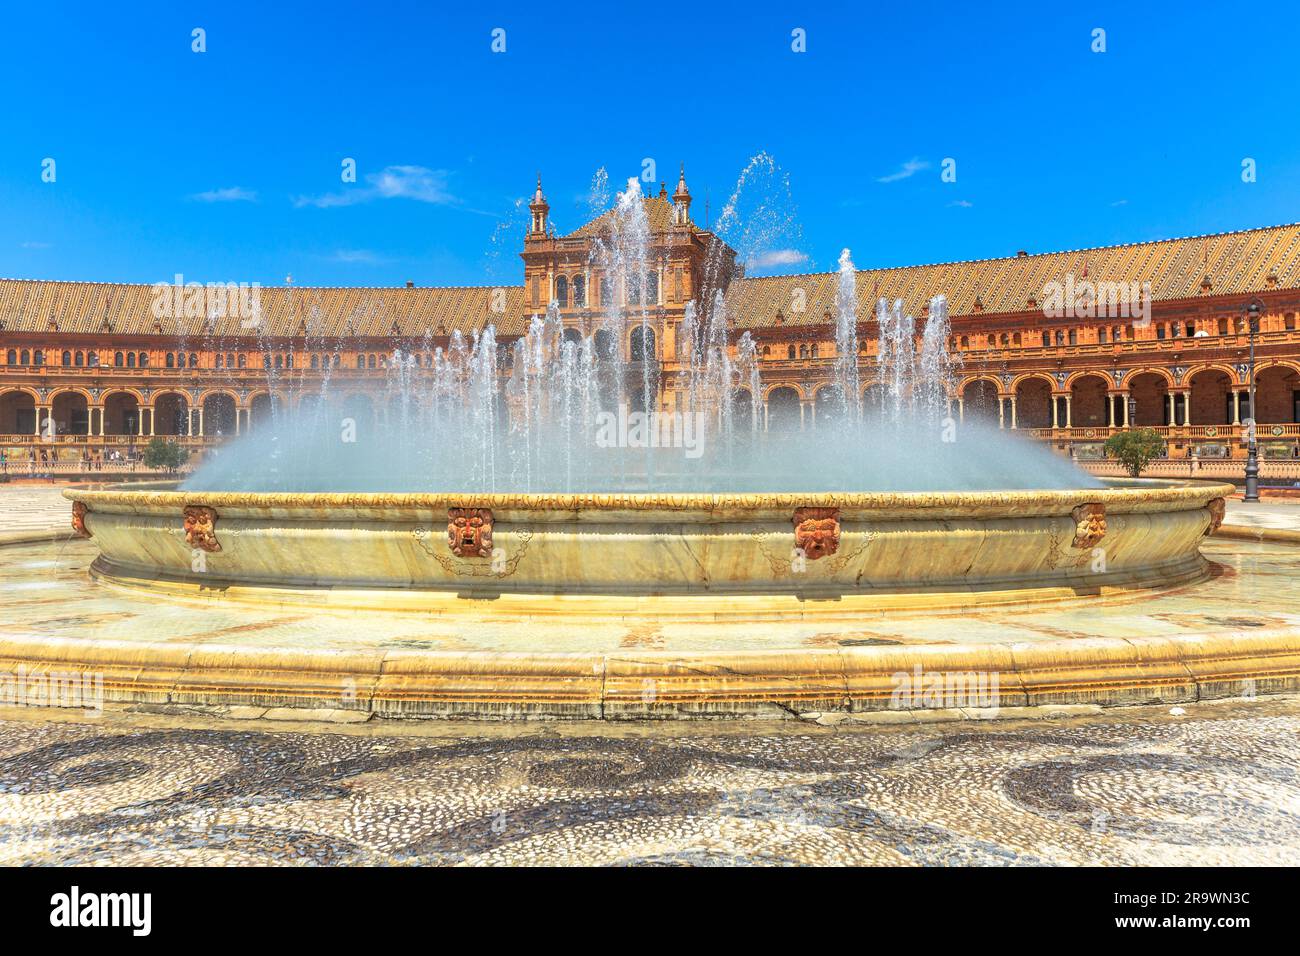 Fontana centrale di Plaza de Espana a Siviglia con edificio rinascimentale composto da archi e colonne. Piazza della Spagna in una giornata di sole, una famosa Foto Stock